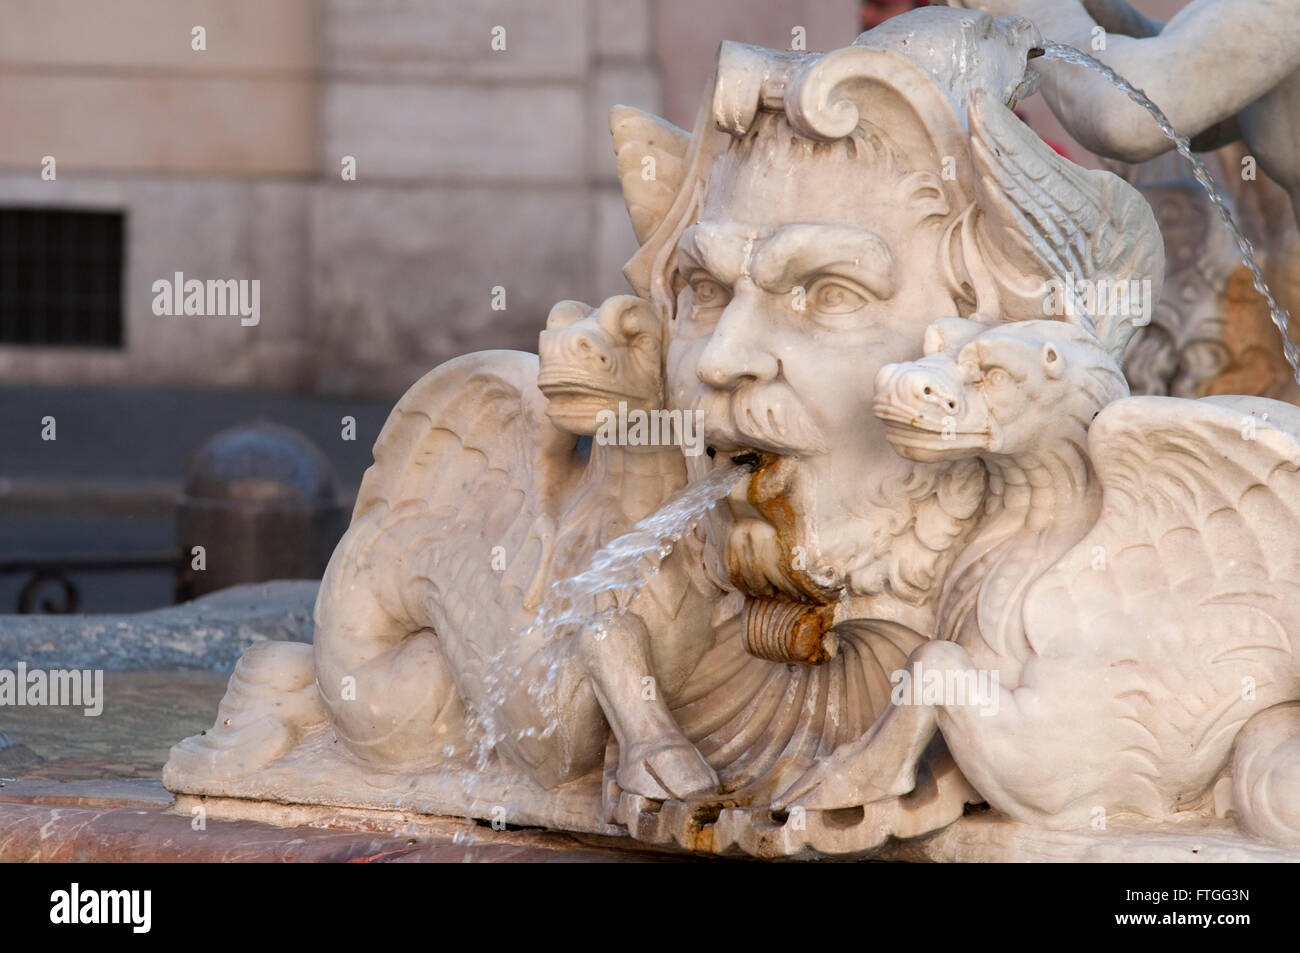 Italy, Lazio, Rome, Piazza Navona Square, Fontana del Moro, Fountain, Detail Stock Photo